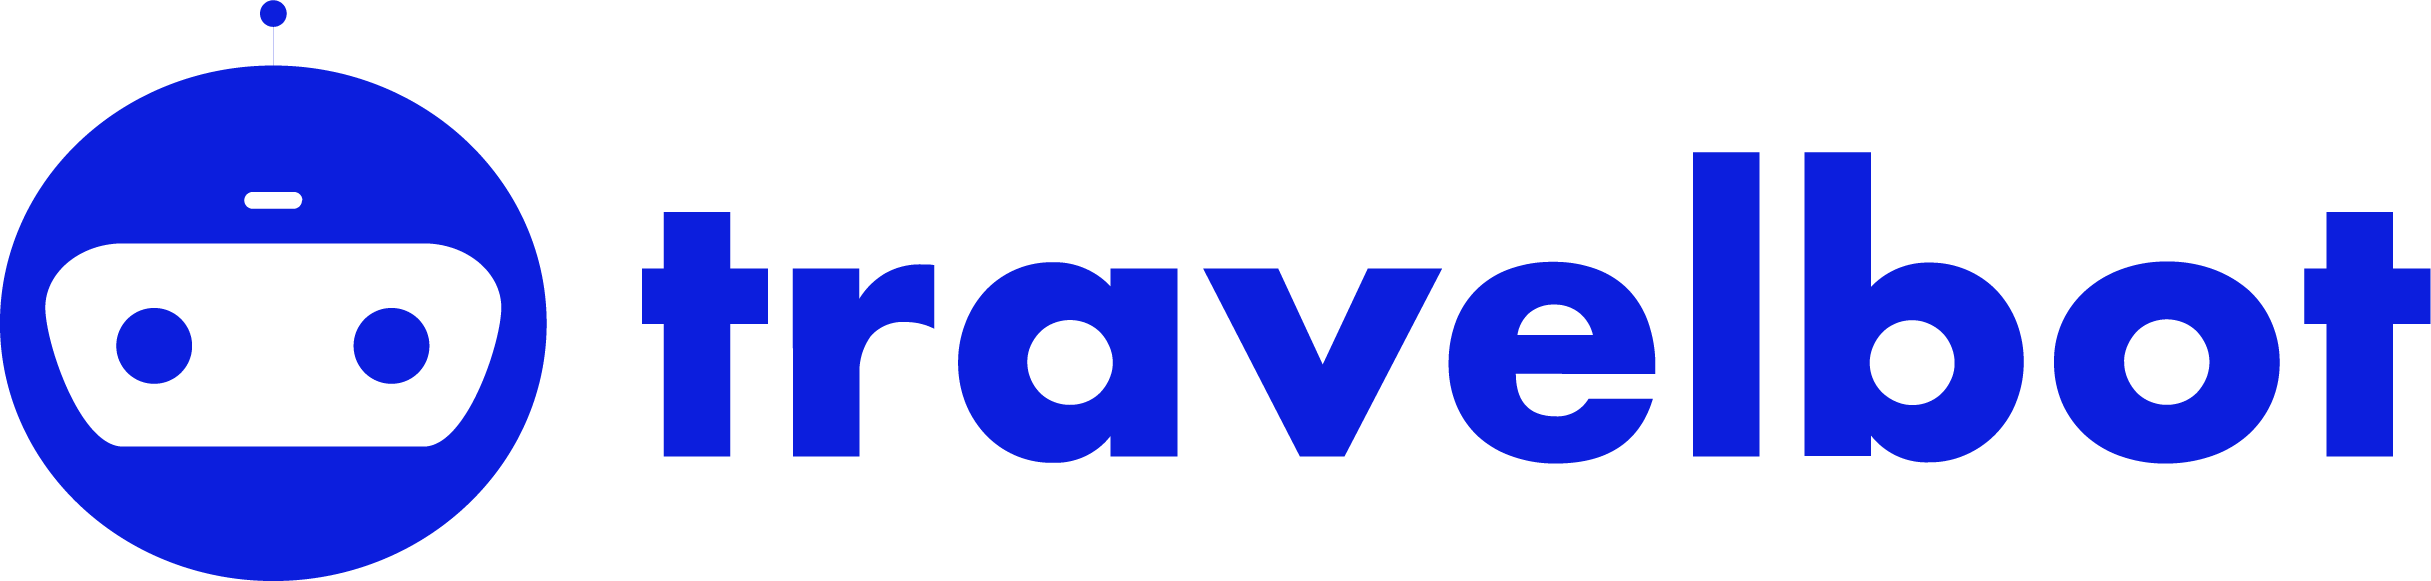 Travelbot | Marketplace logo